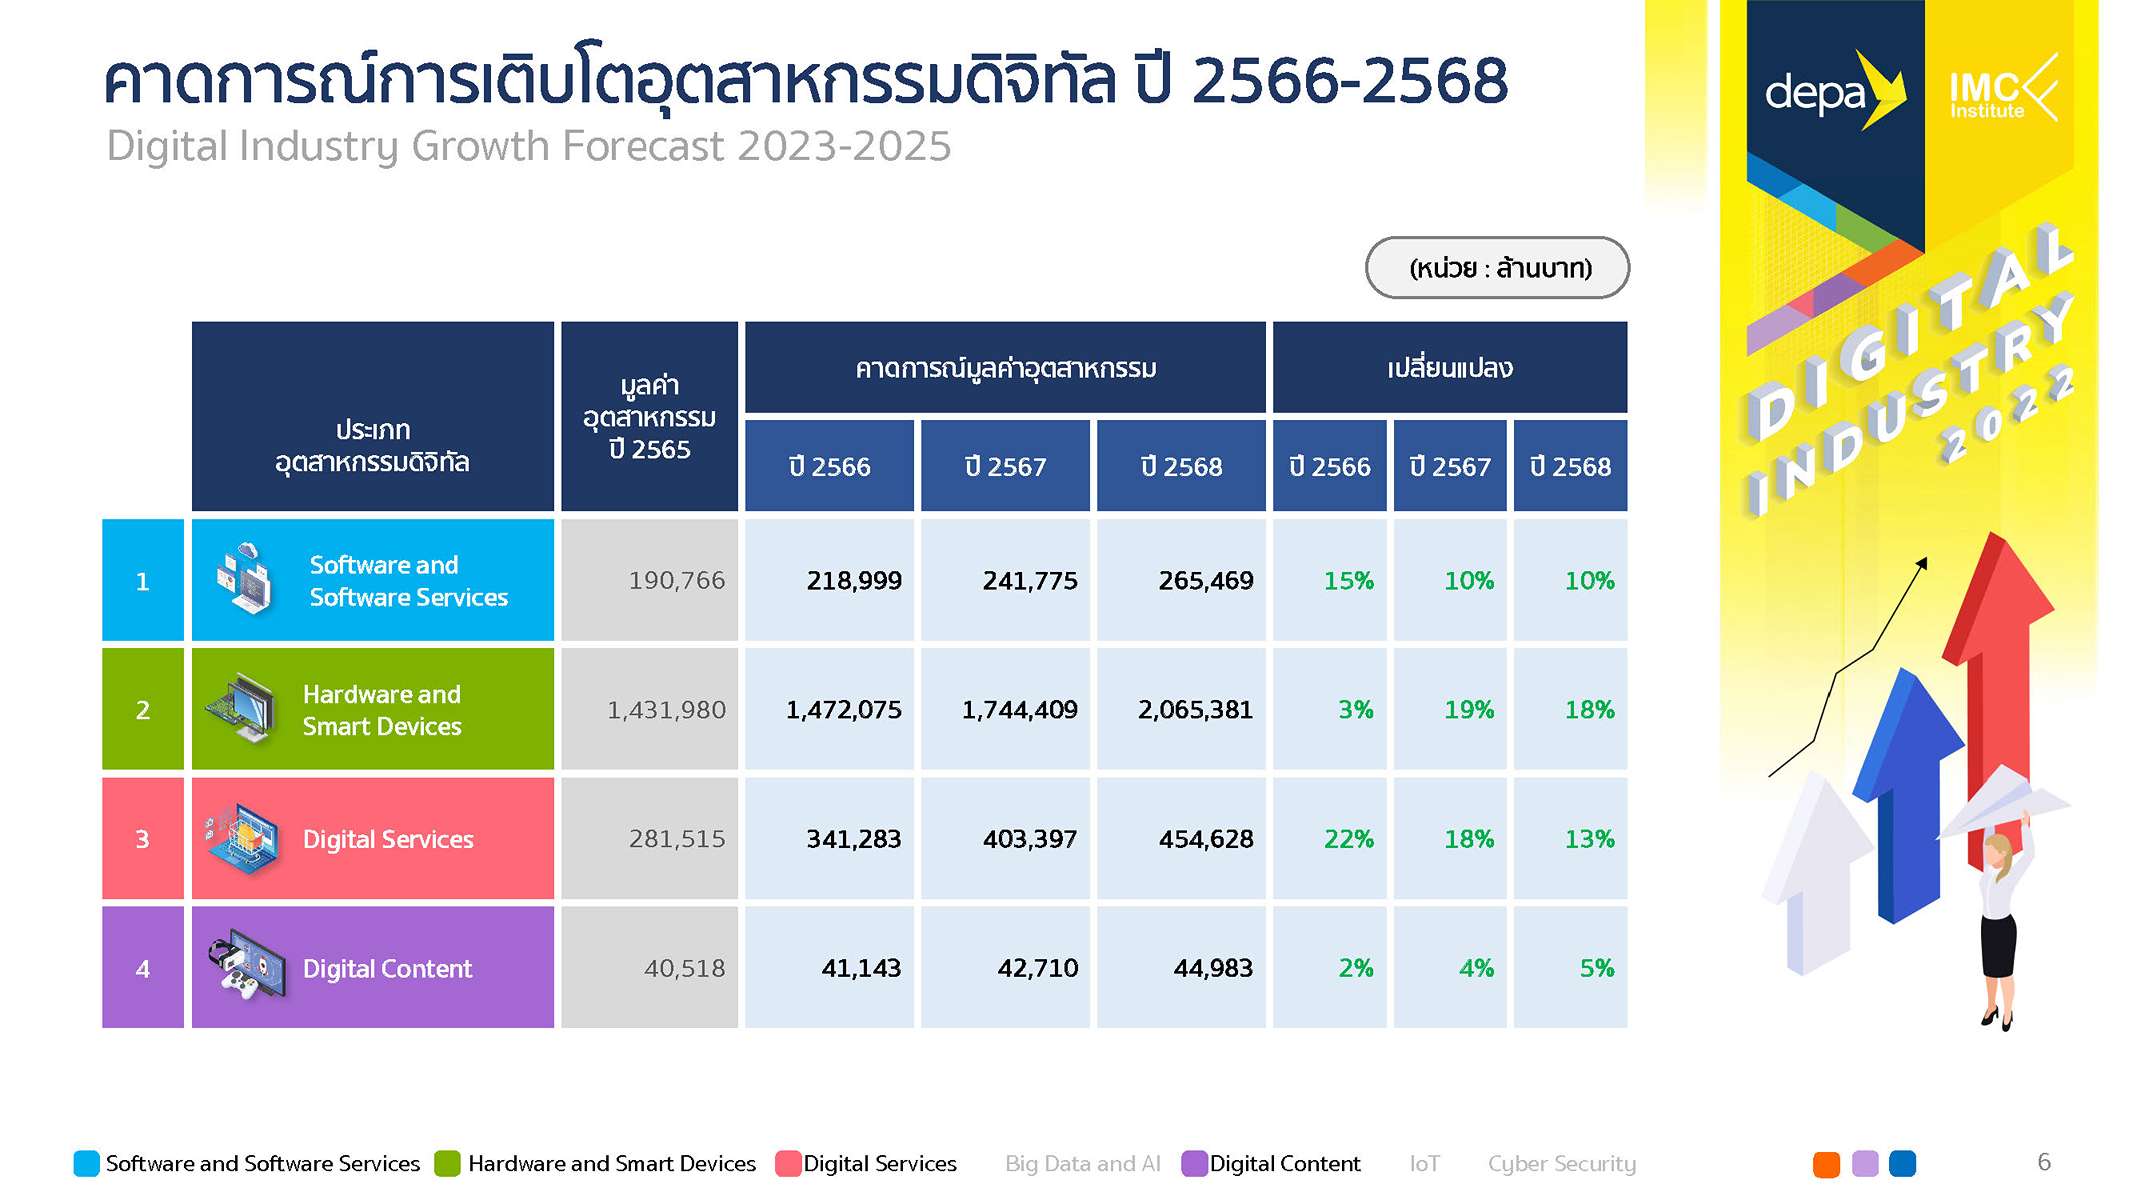 ดีป้า เผยอุตสาหกรรมดิจิทัลไทย ปี 2565 โต 14% มูลค่ารวมแตะ 2.61 ล้านล้านบาท 